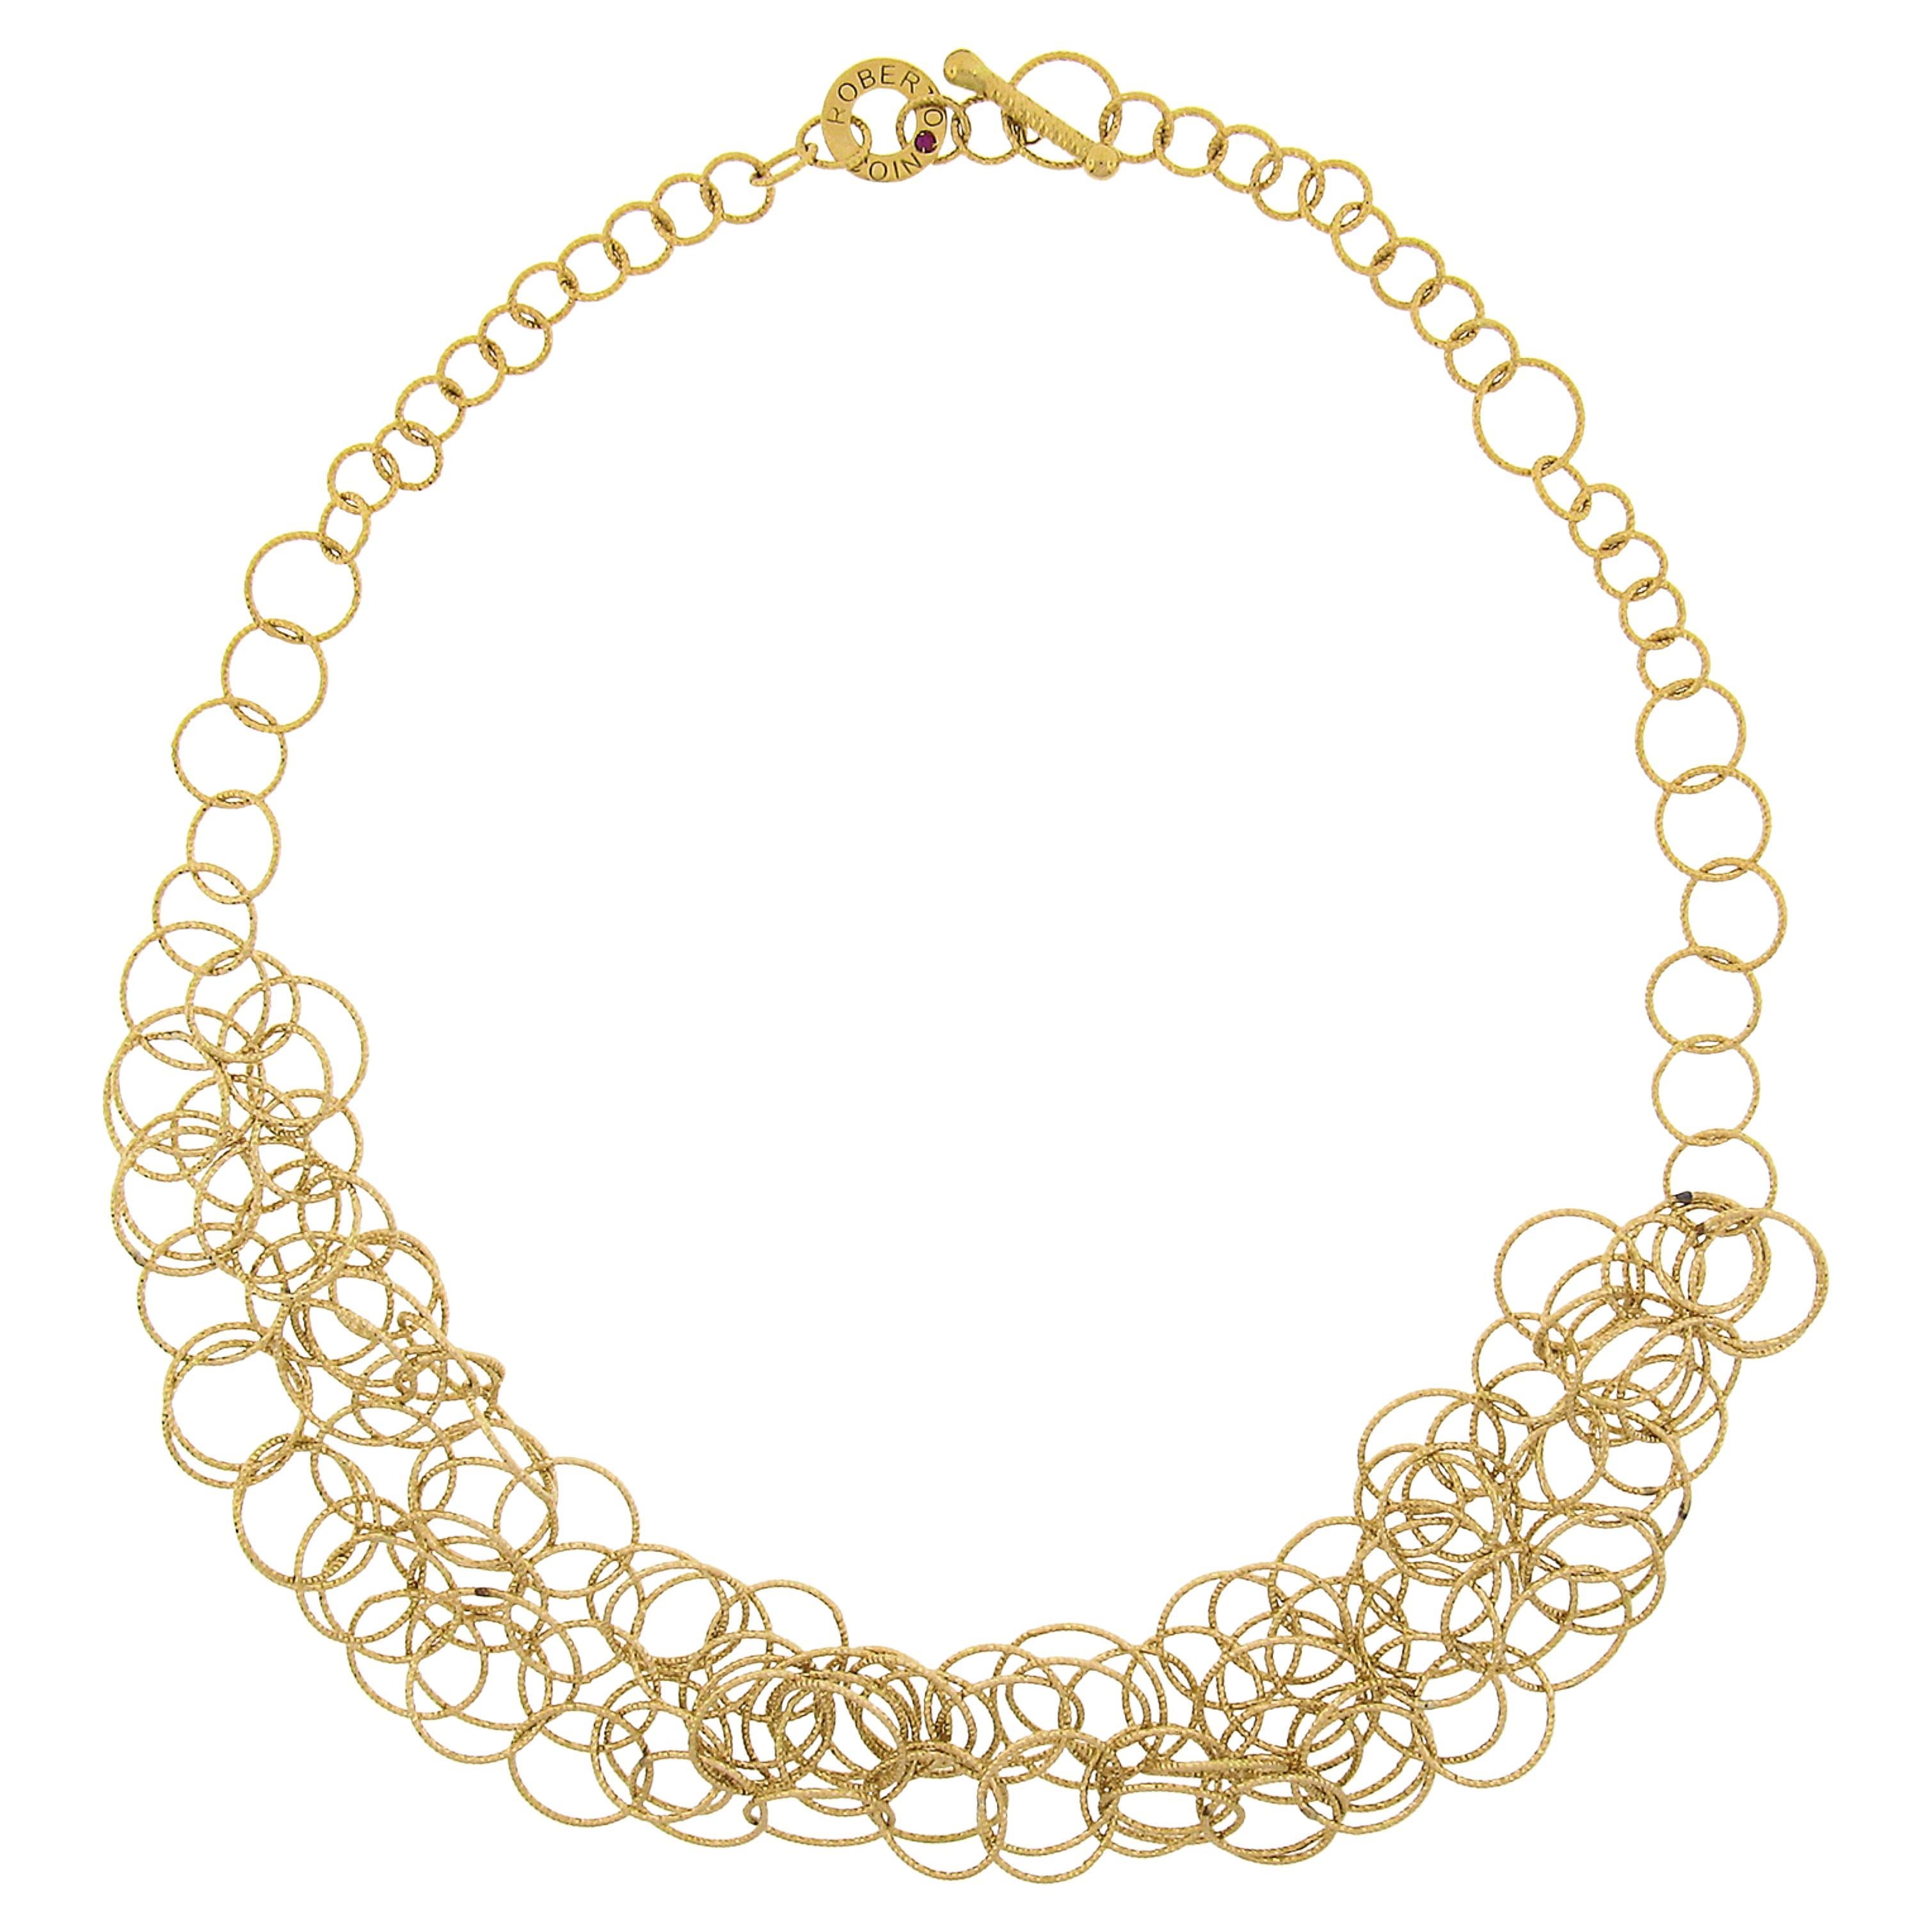 Roberto Coin 18k Gold Textured Interlocking Round Link Mauresque Necklace